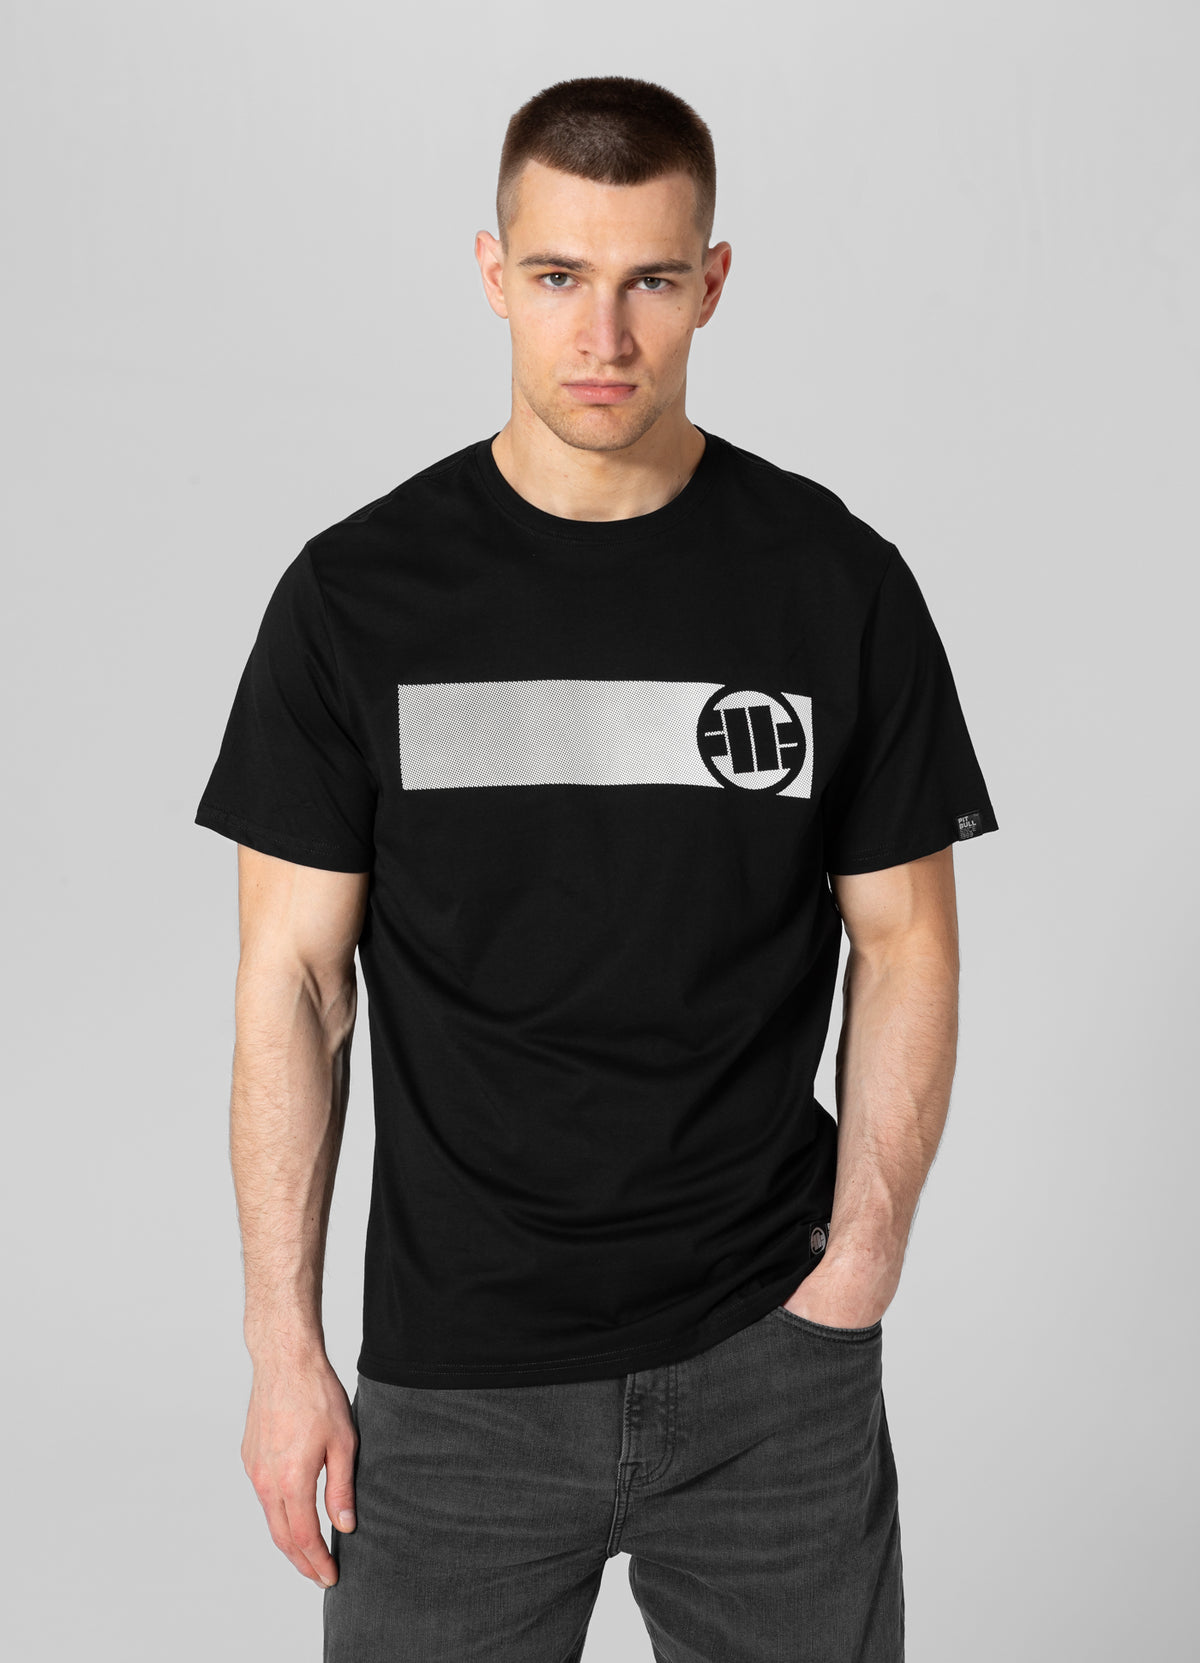 CASINO 3 Lightweight Black T-shirt